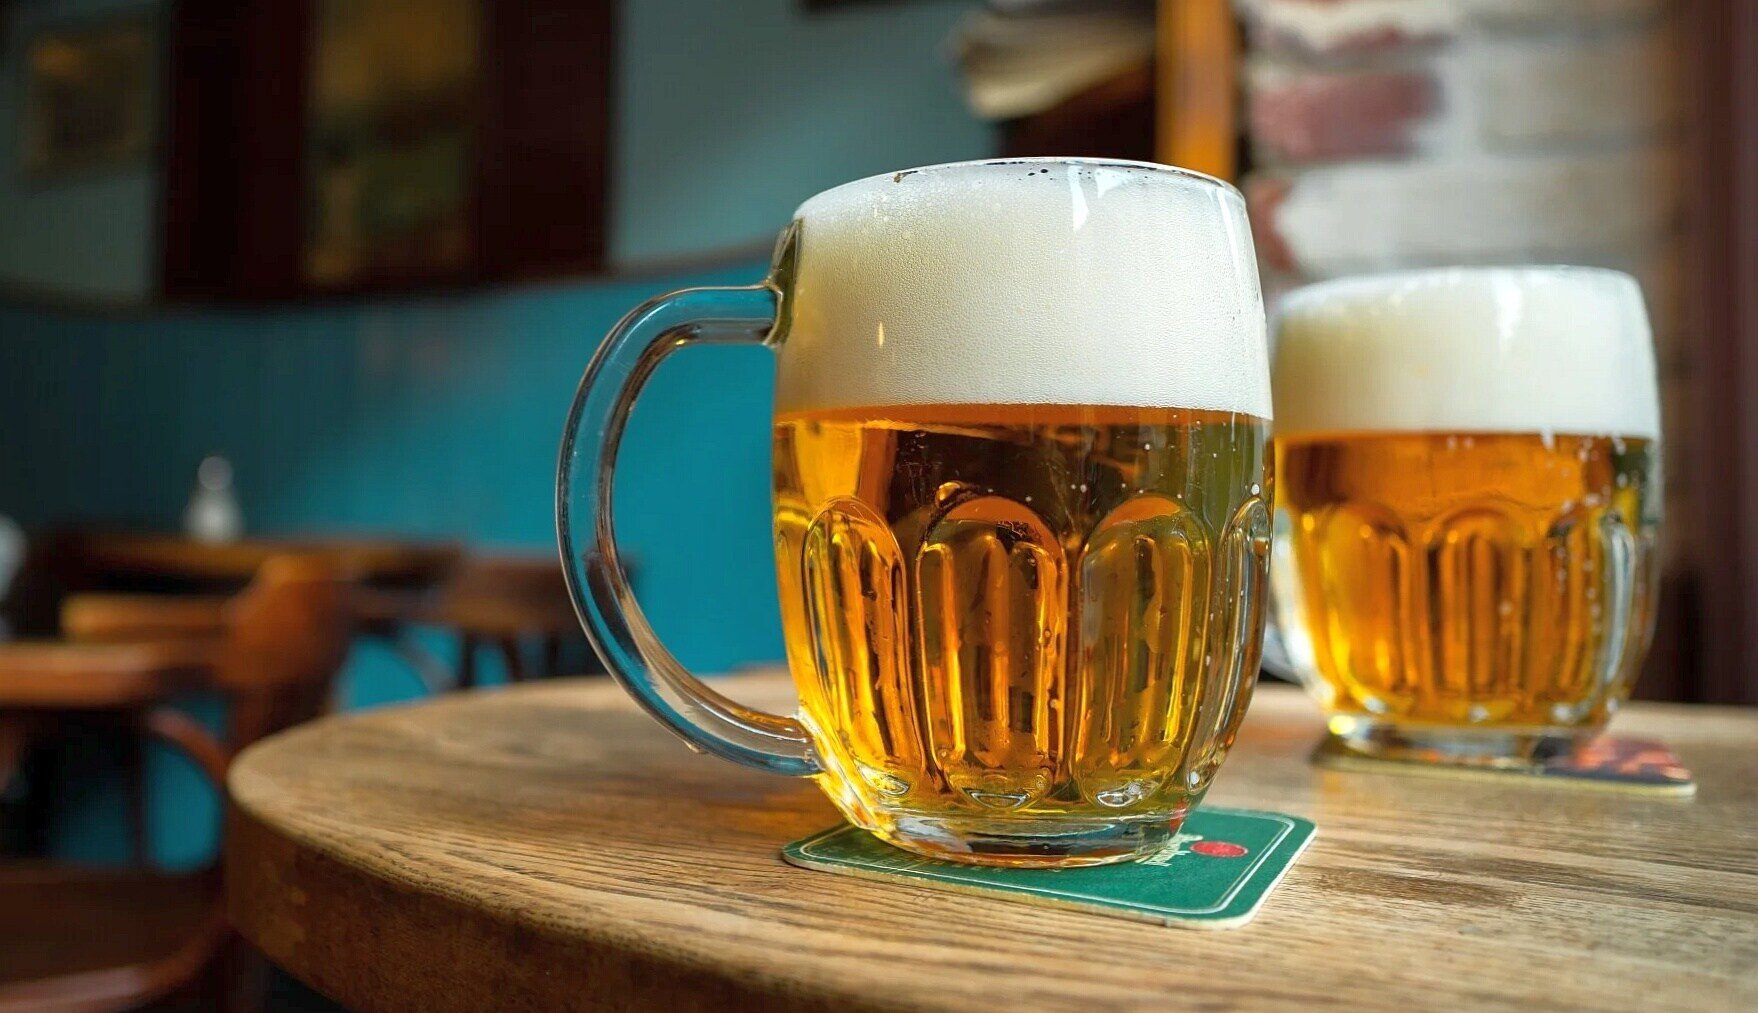 O české pivo je stále zájem. Pivovary CZ vykázaly rekordní vývoz i tržby